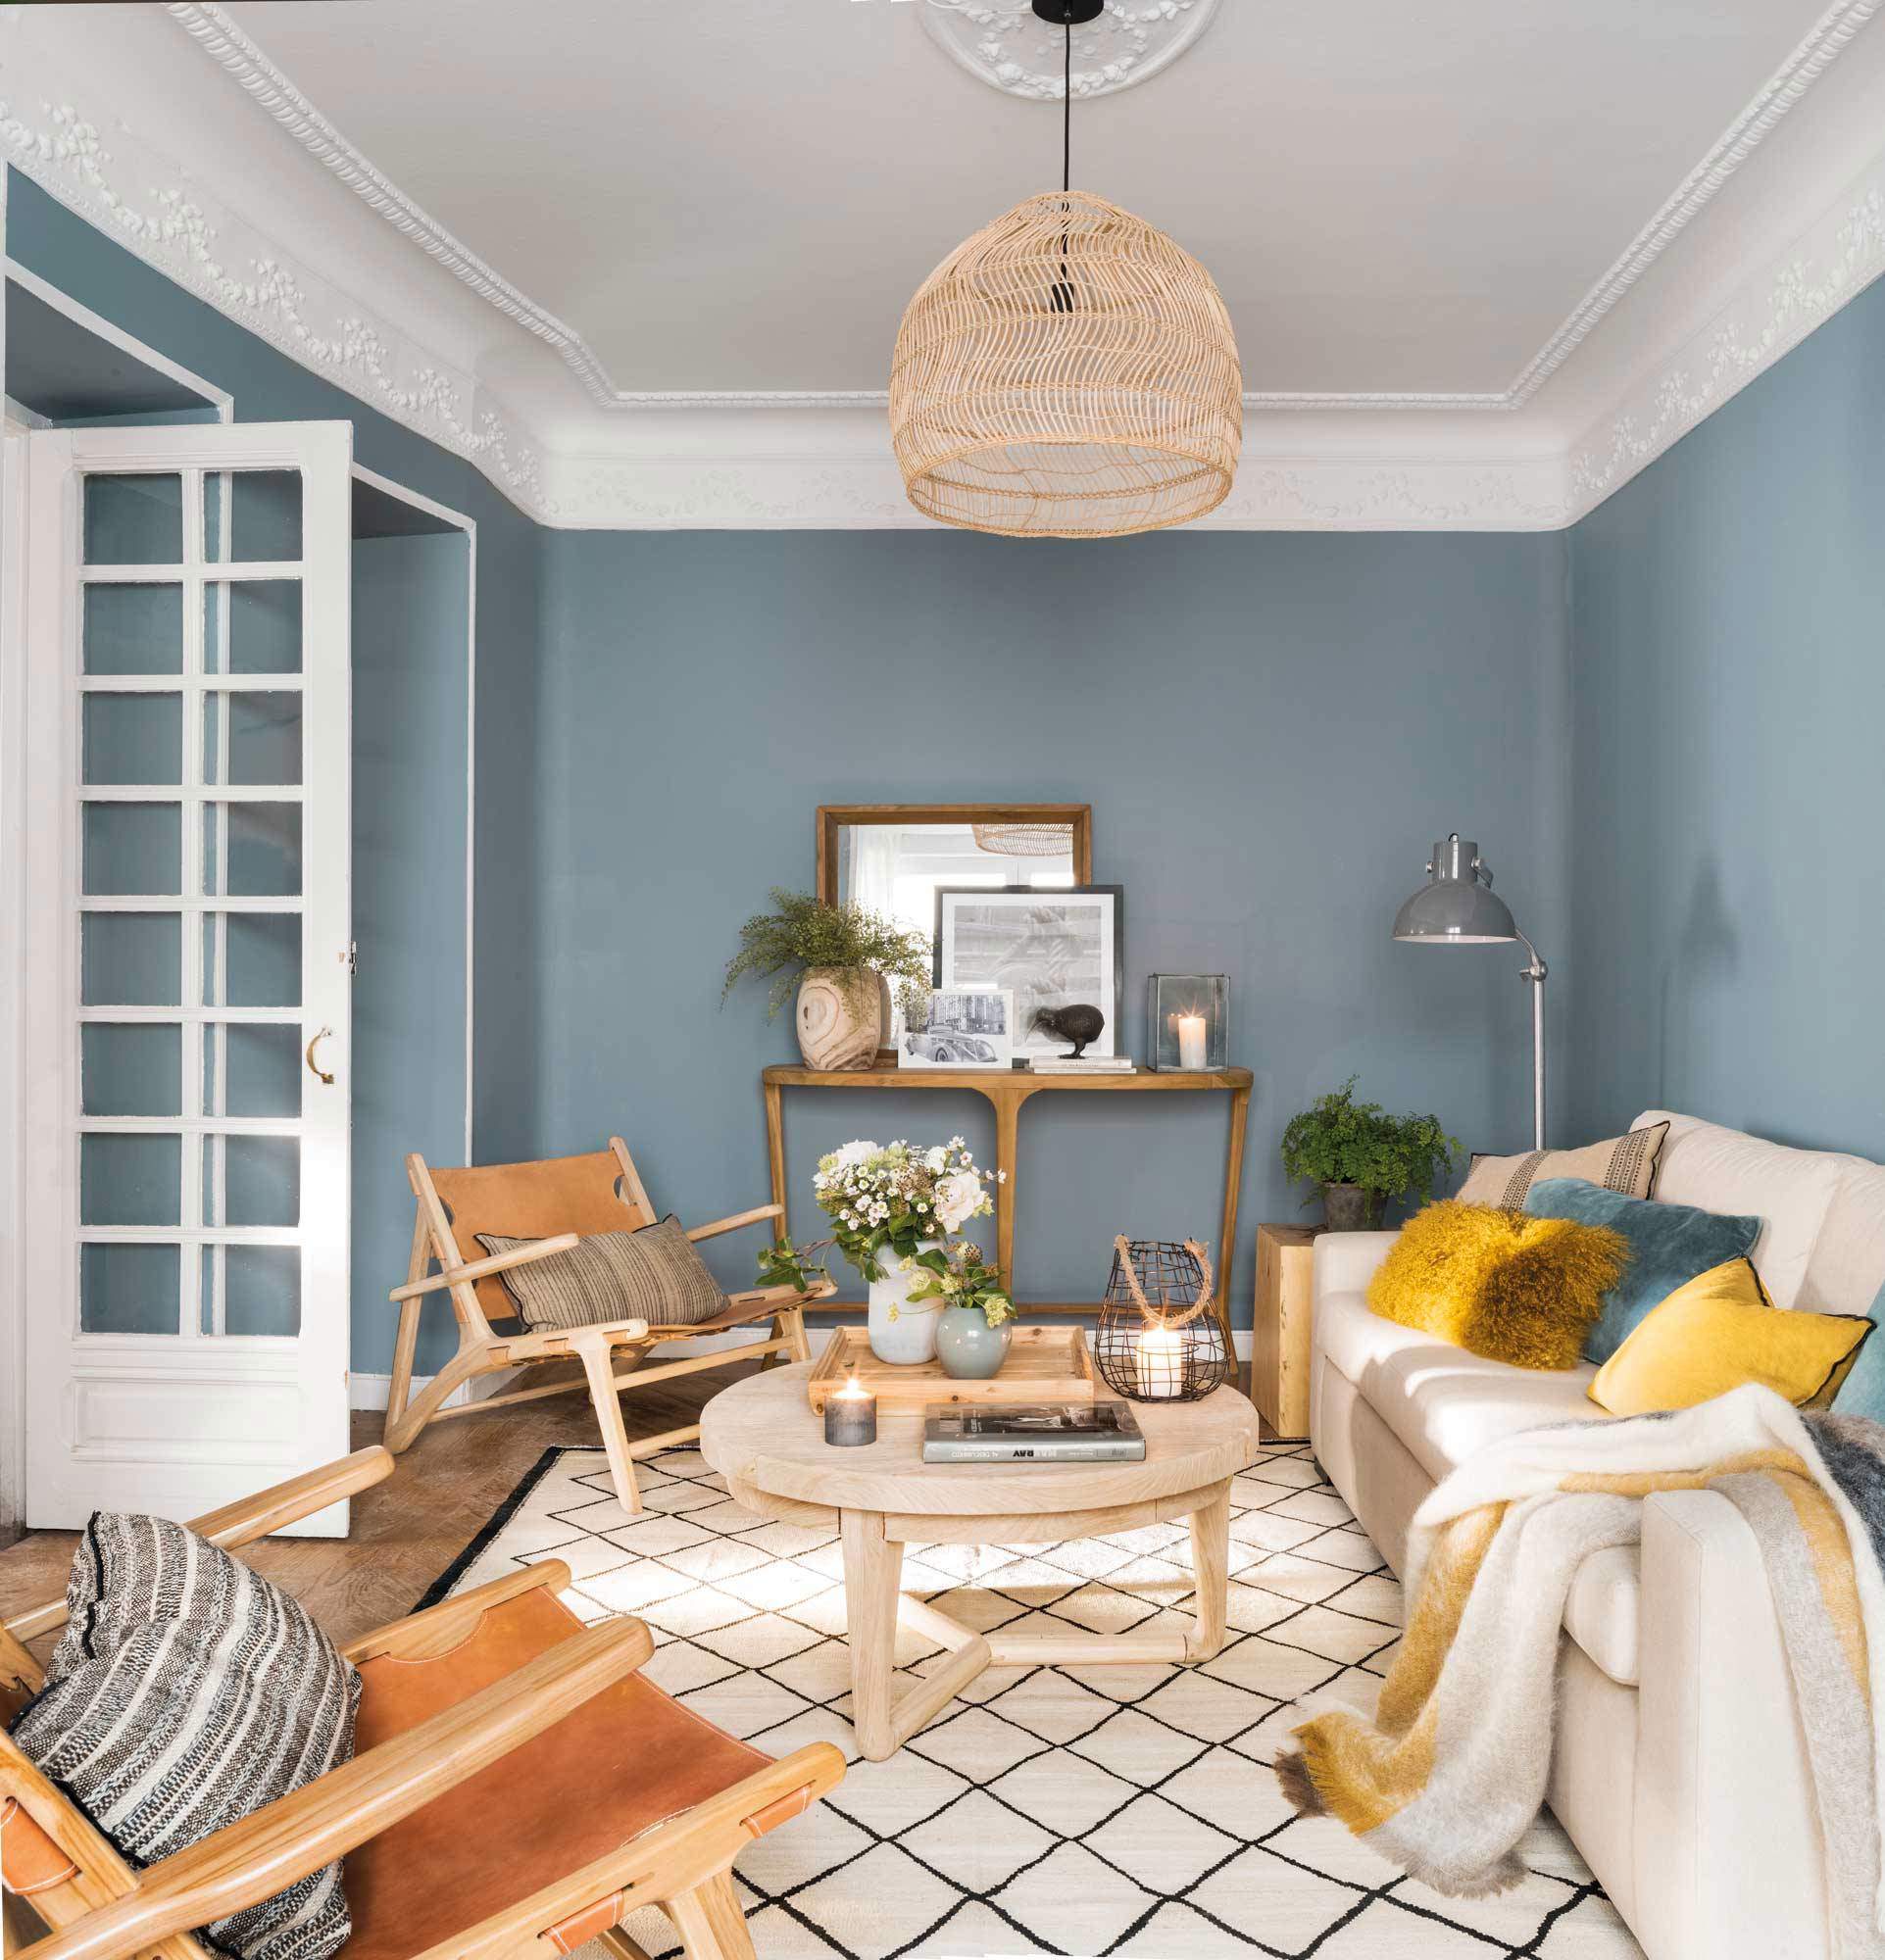 Salón con sofá, butacas, alfombra de cuadros, molduras y paredes azules marinas.